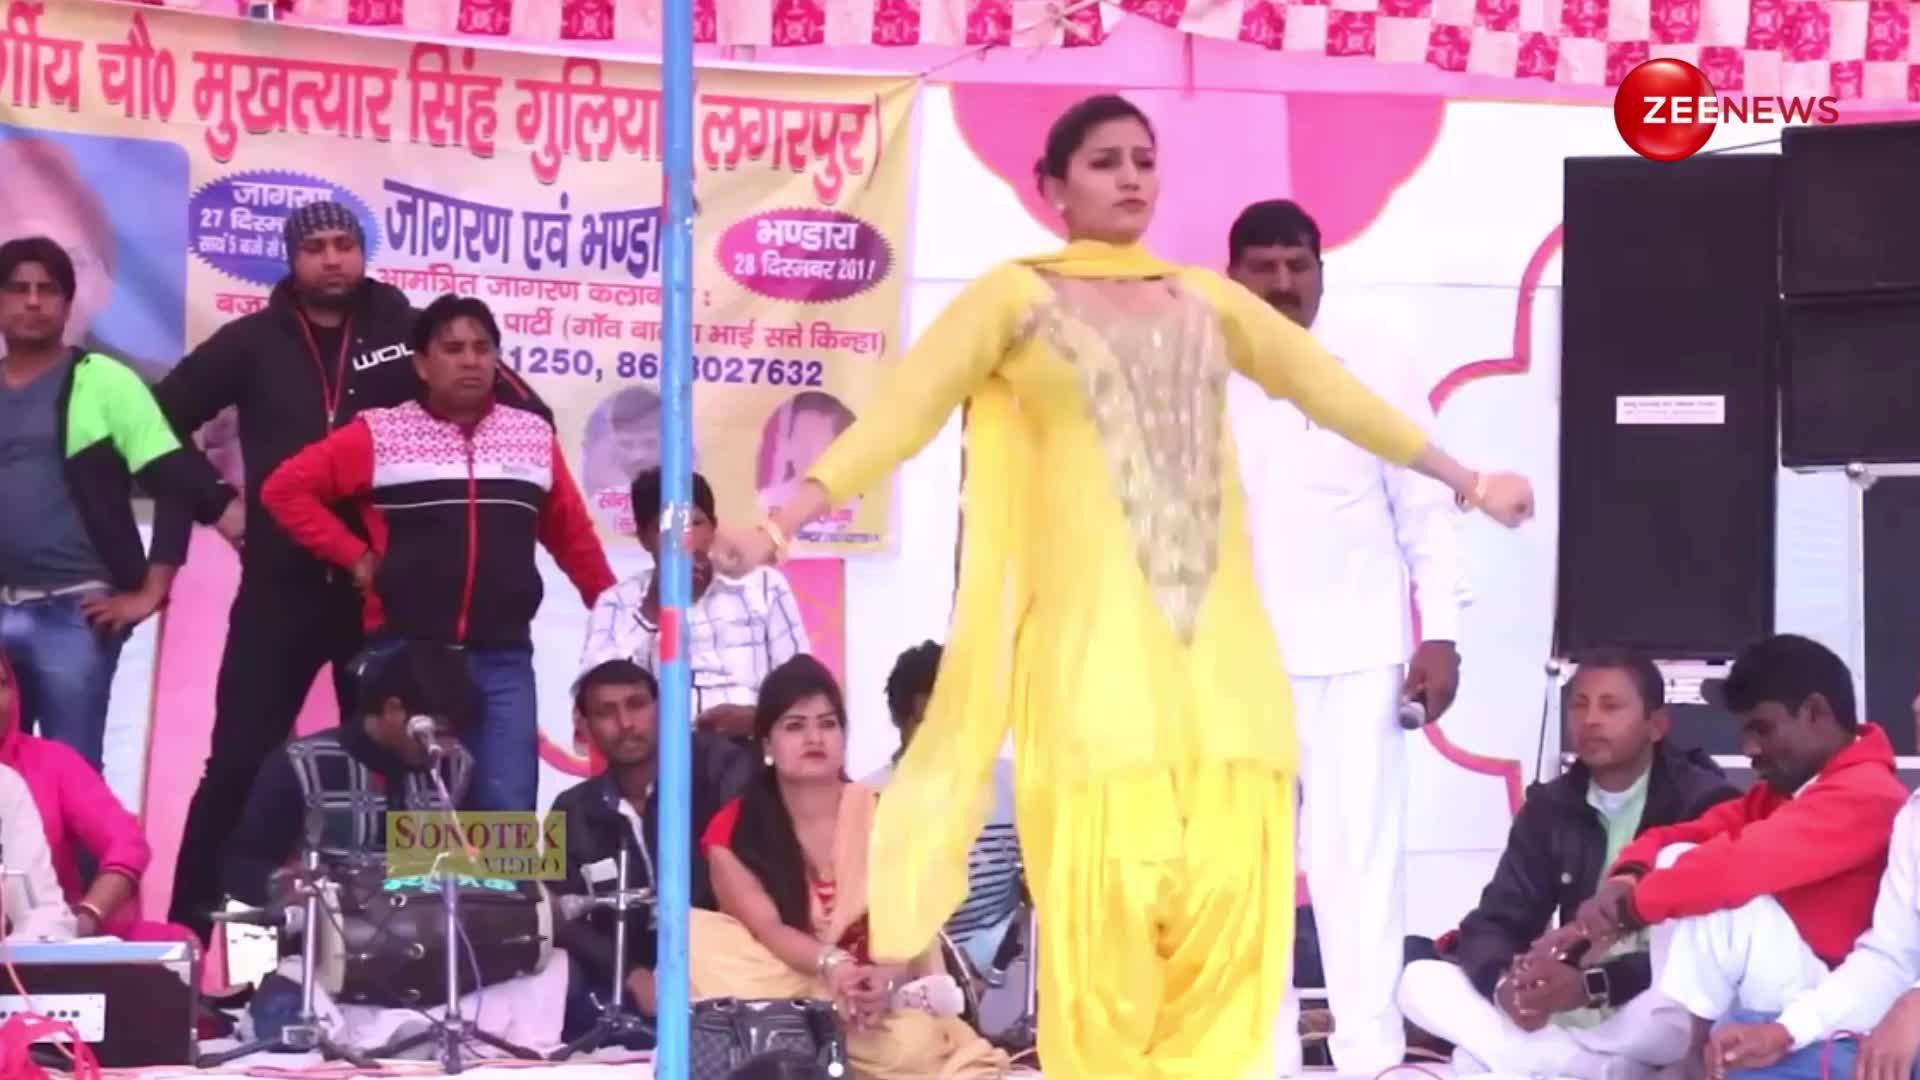 'बन्दूक चालेगी' गाने पर Sapna Chaudhary ने दिखाया अपना गदर डांस, लाखों में उमड़ी लोगों की भीड़